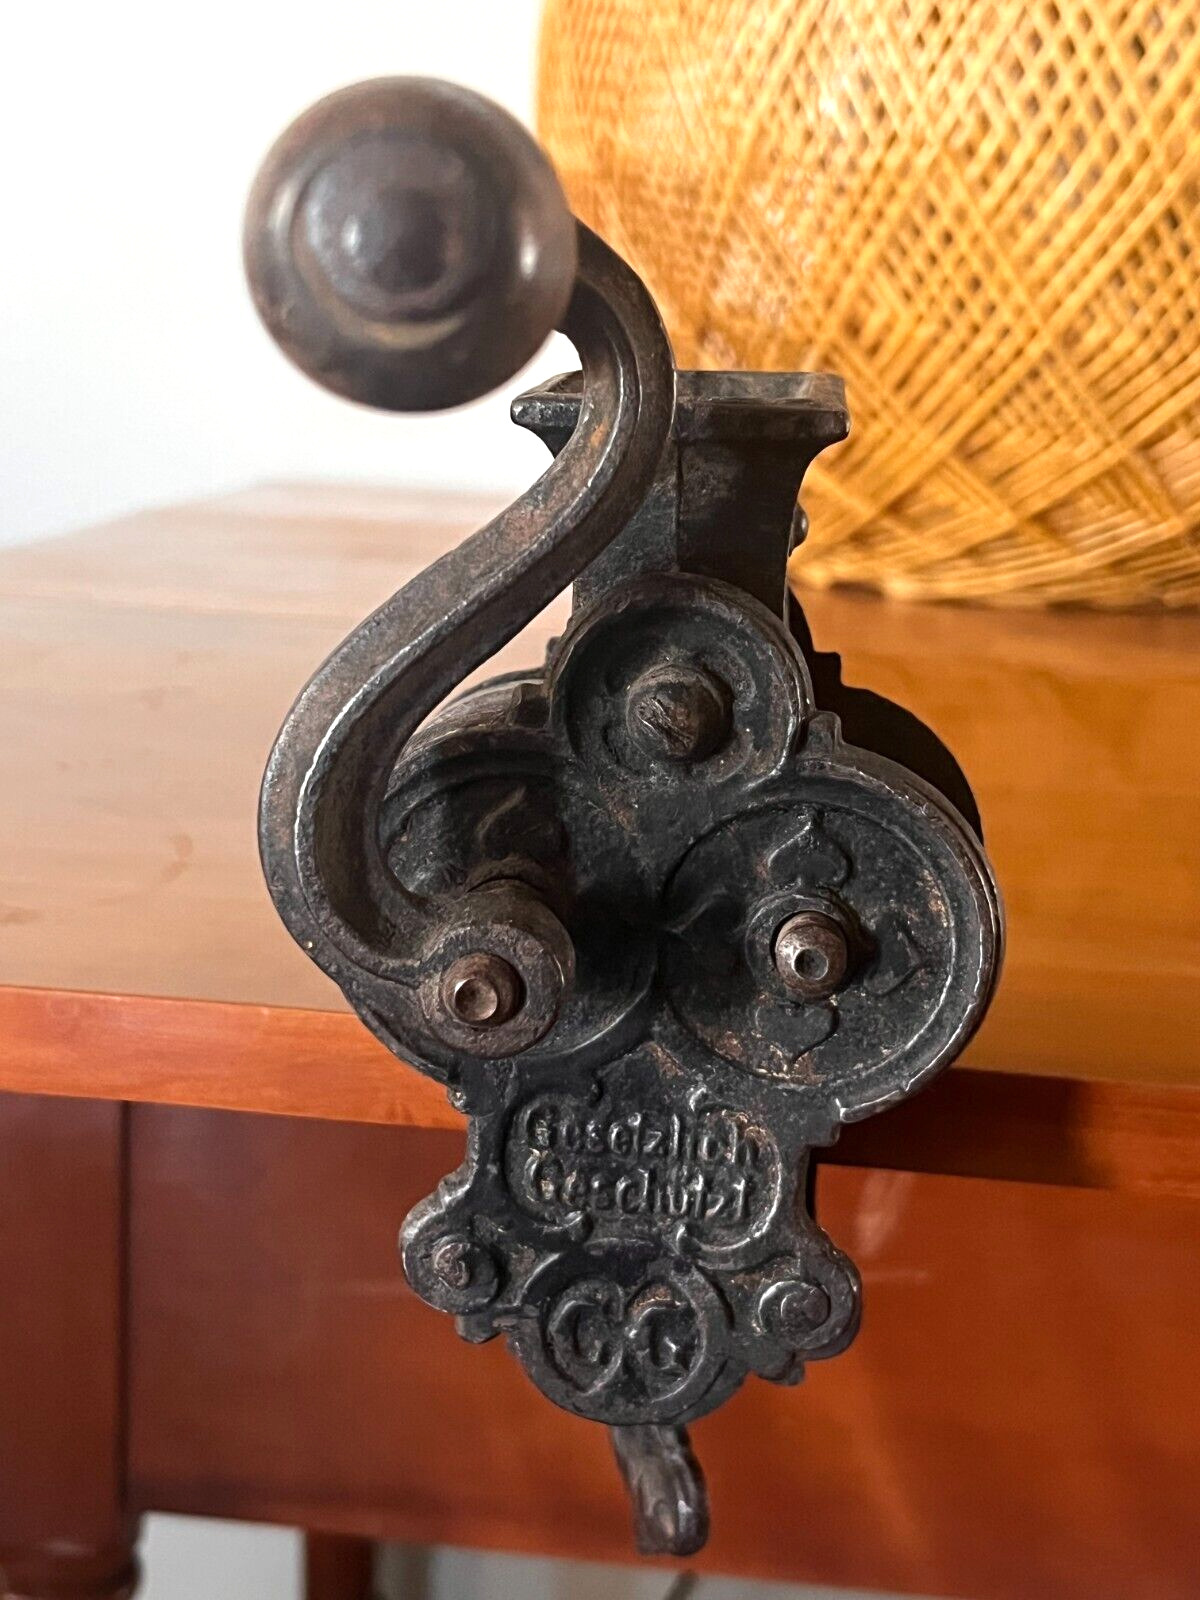 Antique Cast Iron Gesetzlich Geschützt Table Mount Ornate Bean Slicer Grinder OB